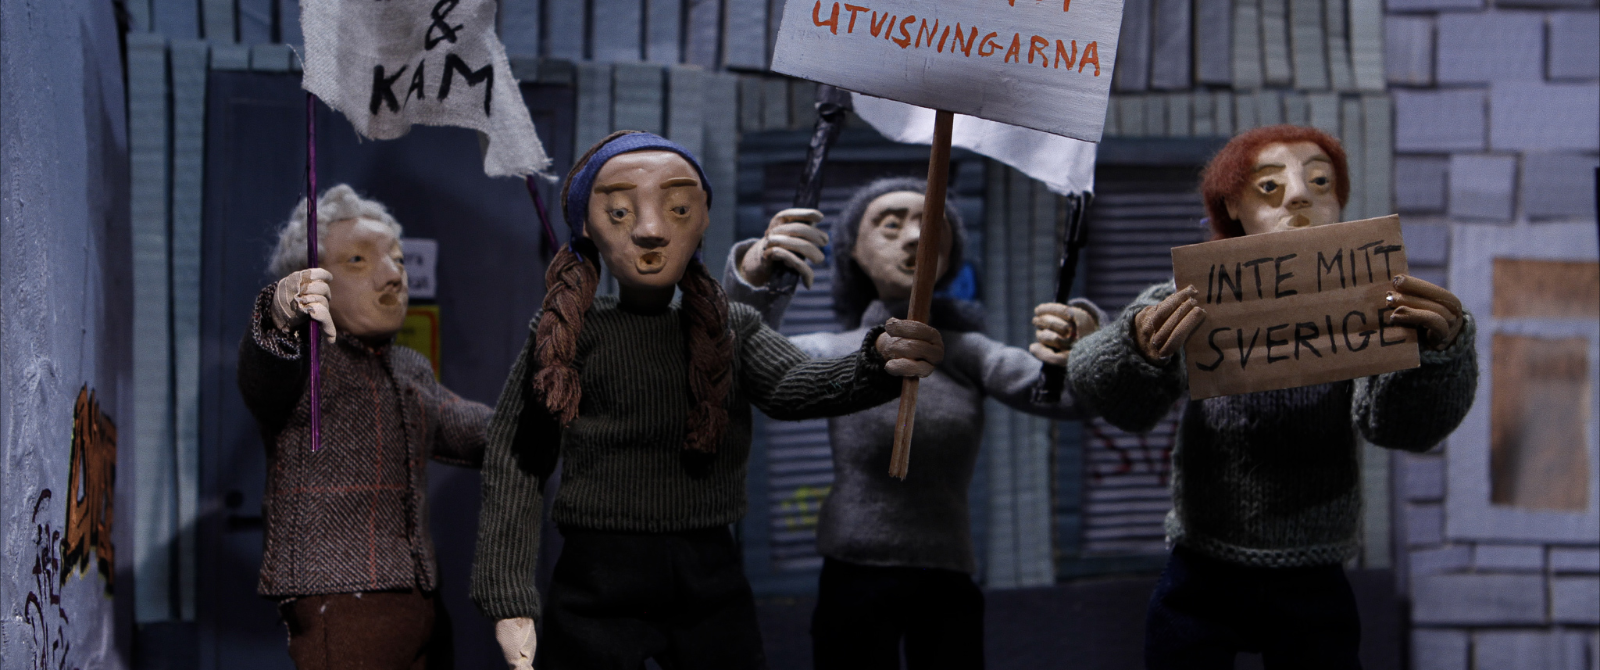 Flera dockor i demonstration, vi kan läsa "Inte mitt Sverige" på ett av plakaten.